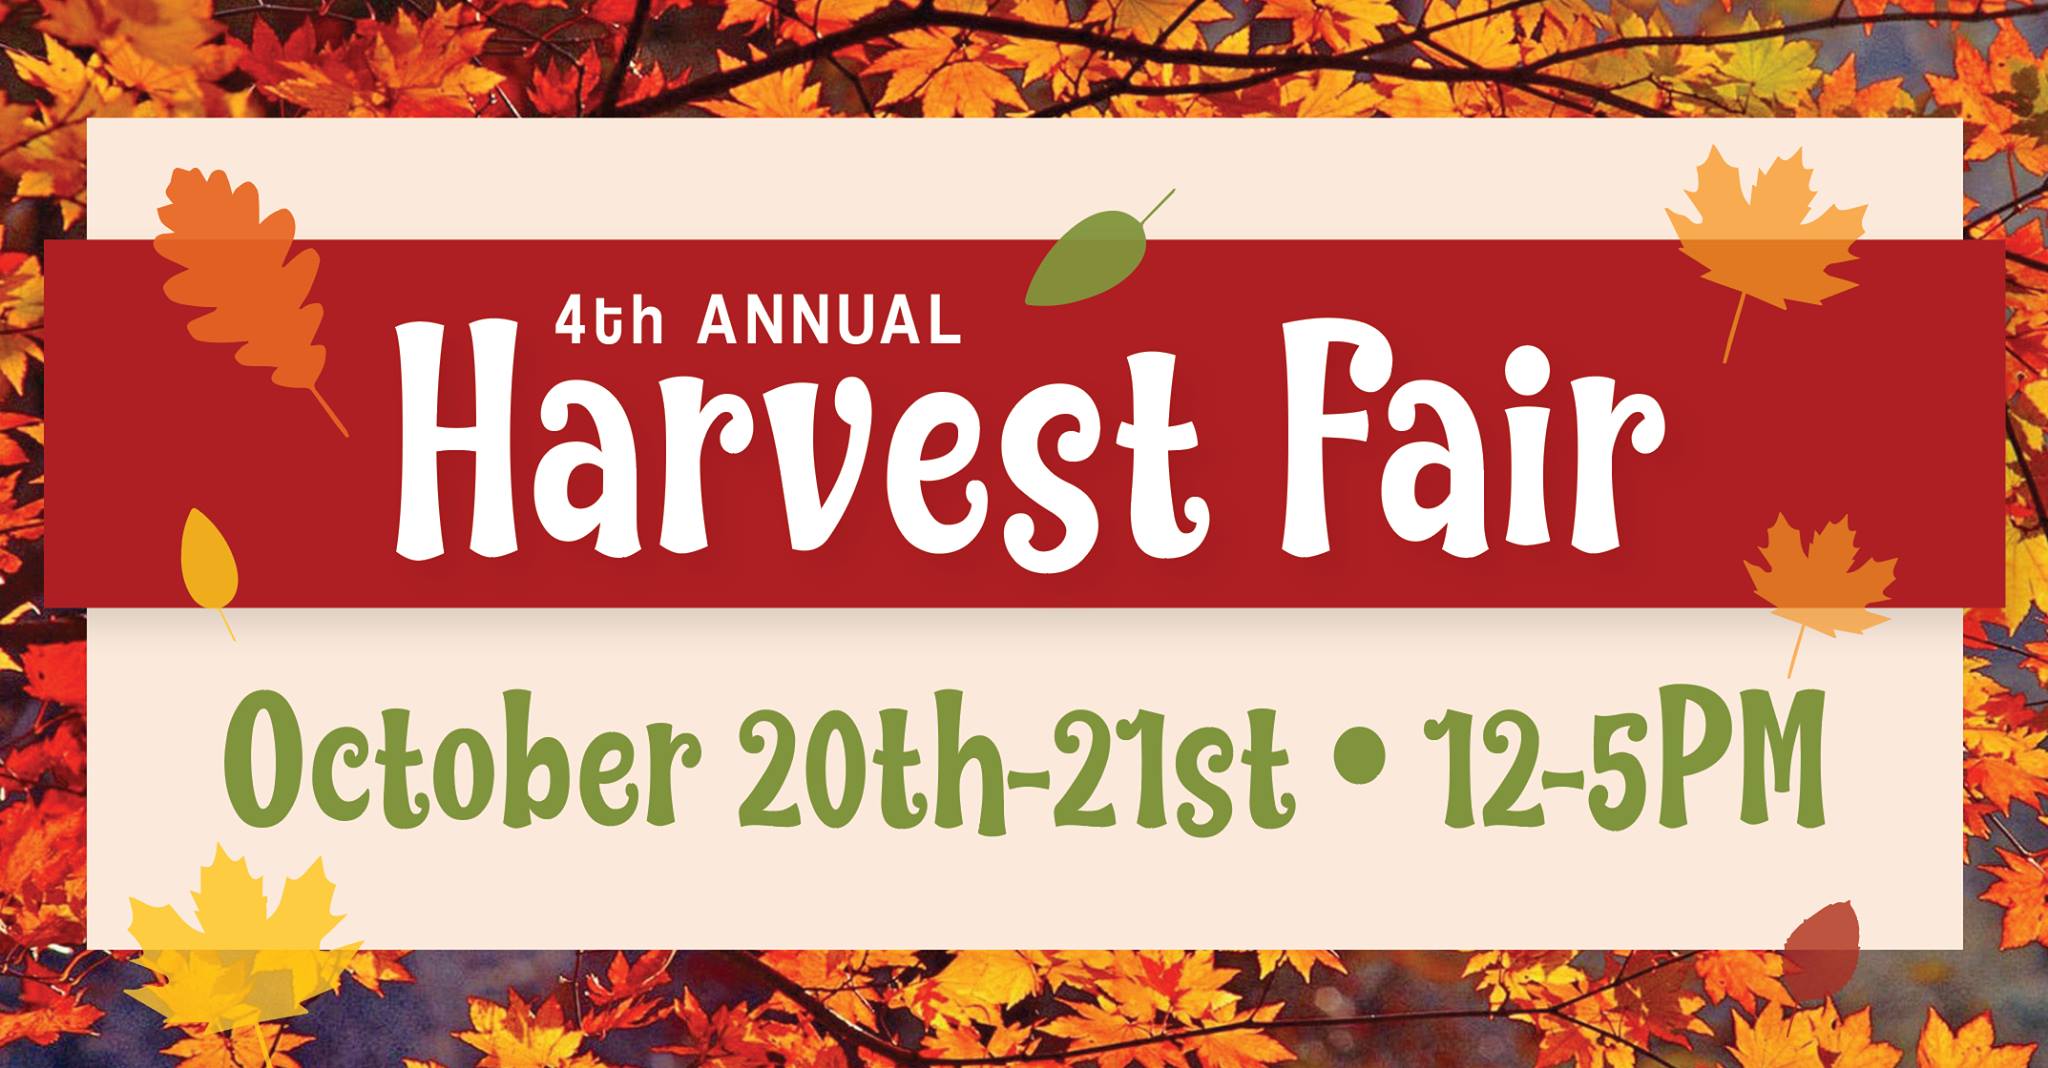 Harvest Fair Fairfield